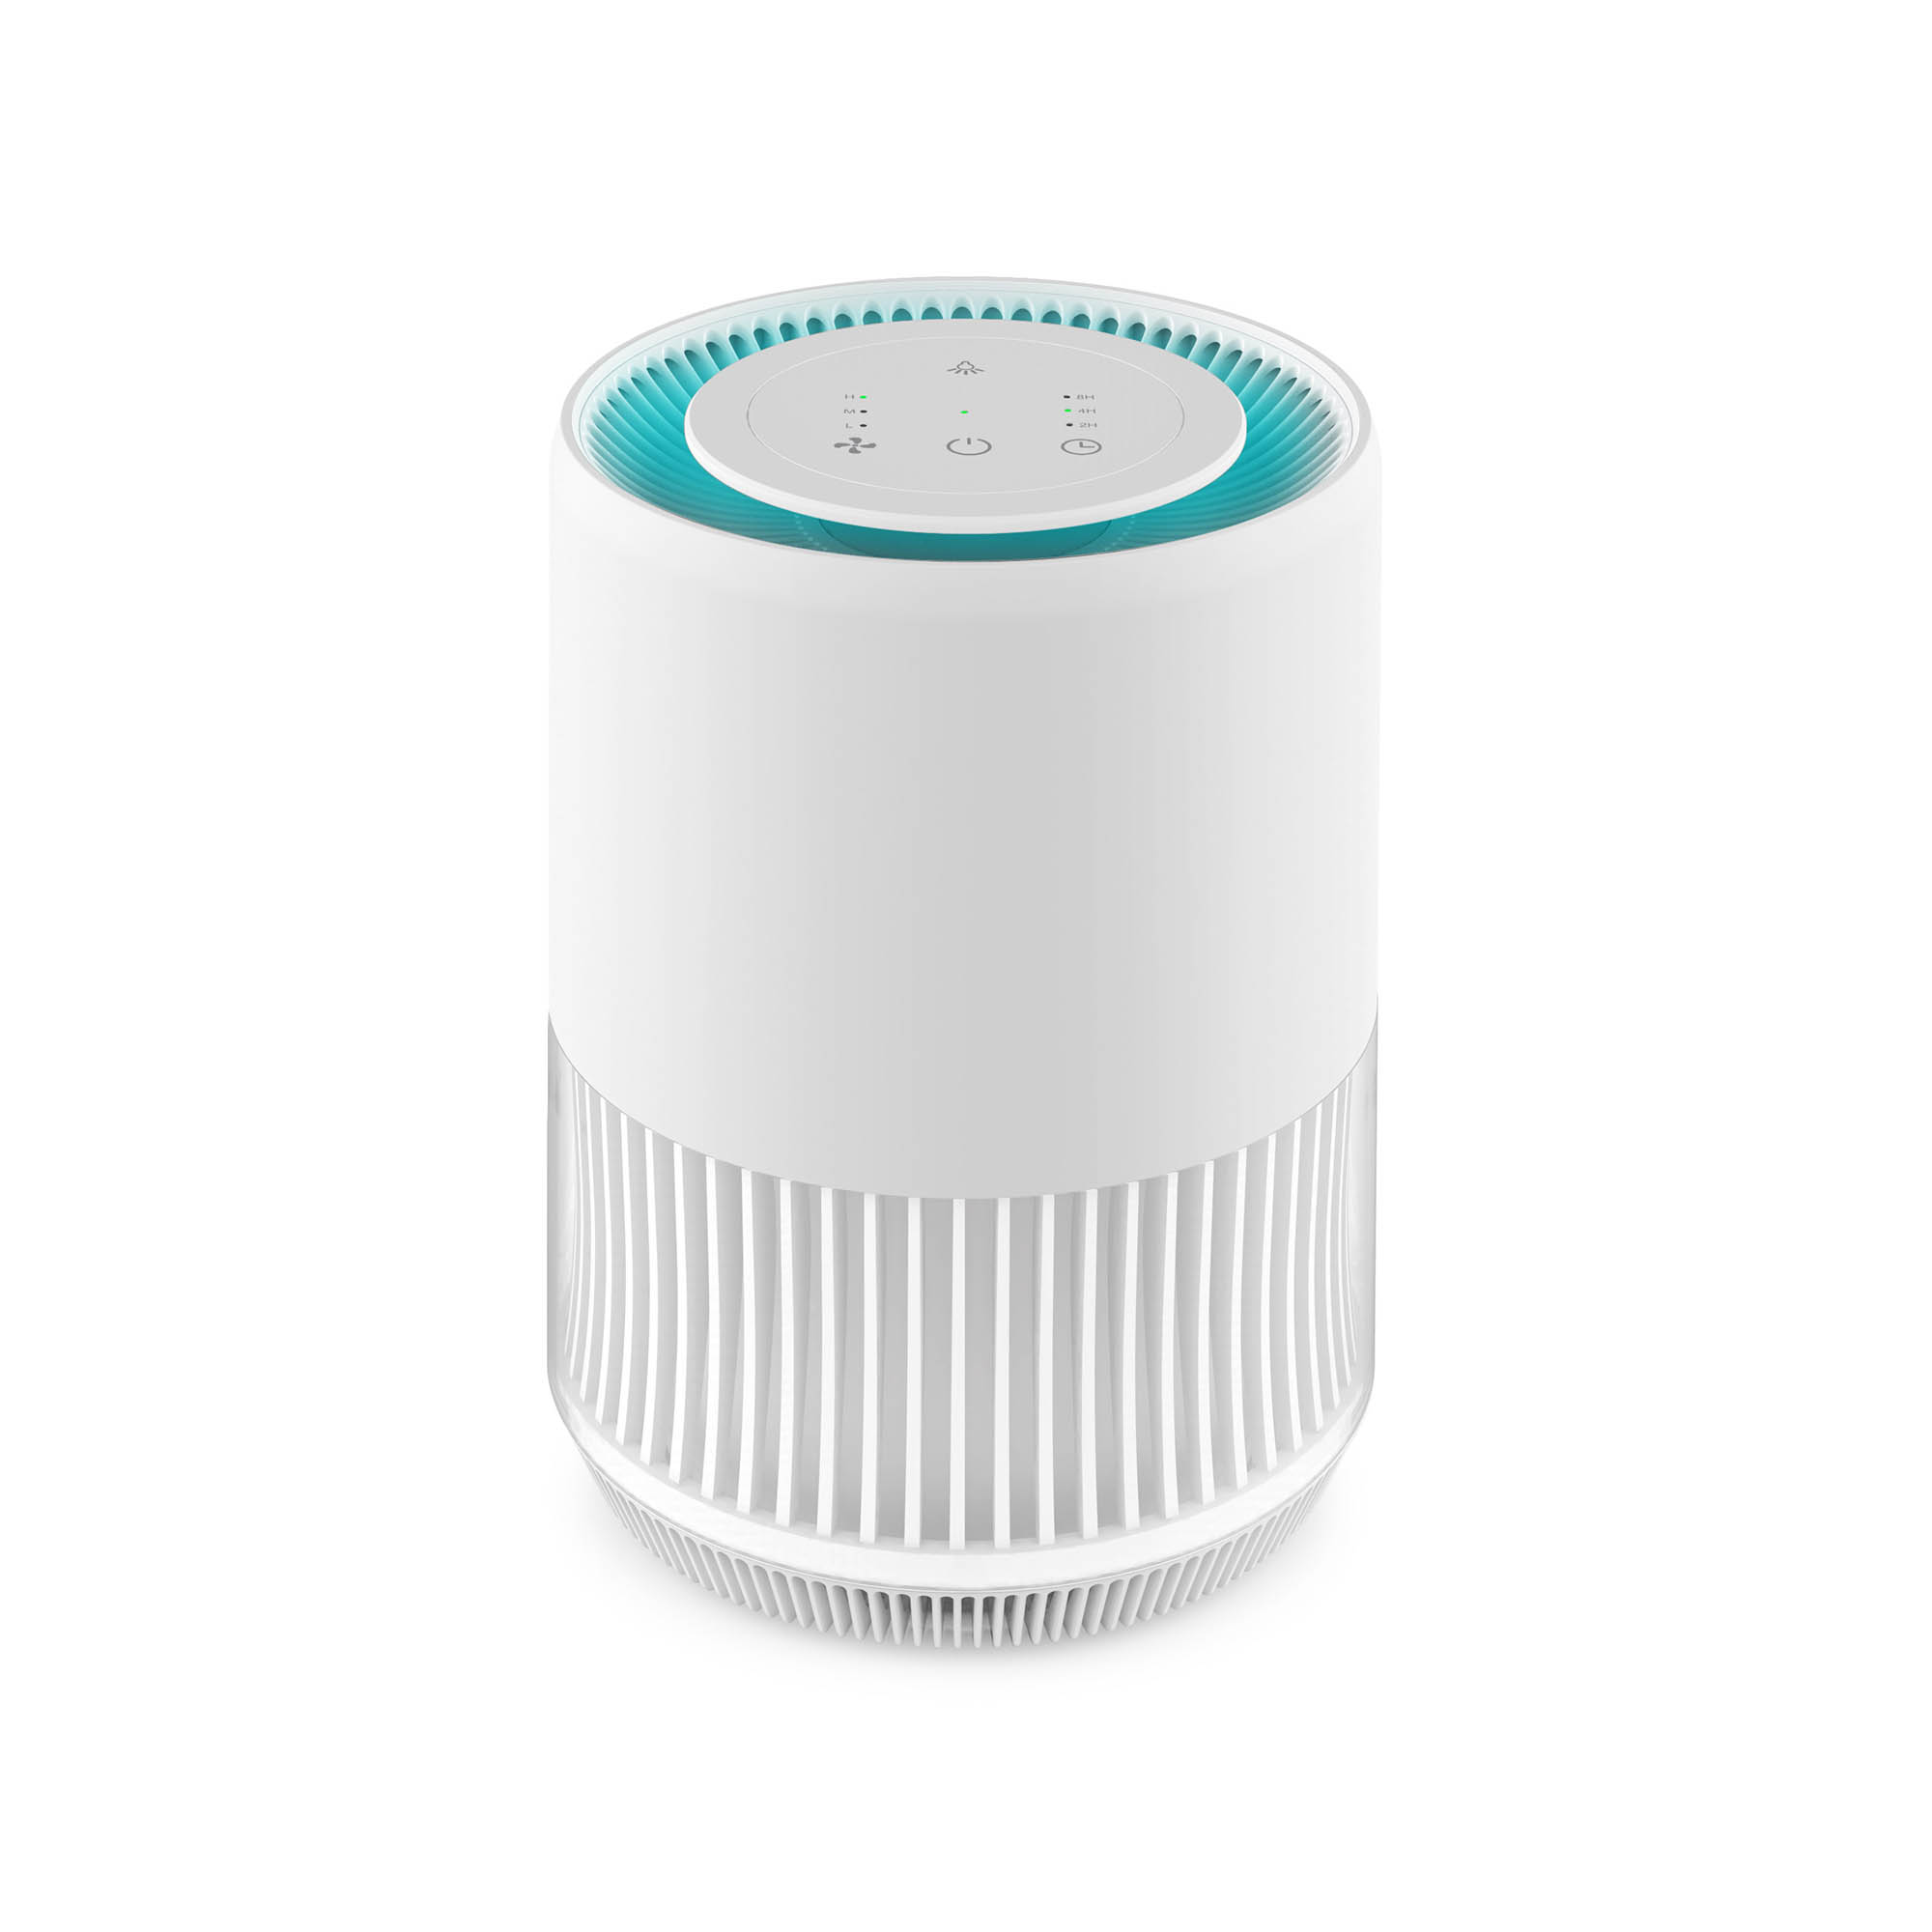 Очиститель воздуха Hiper Iot Purifier ION mini v1, белый (HI-PIONM01) - фото 1